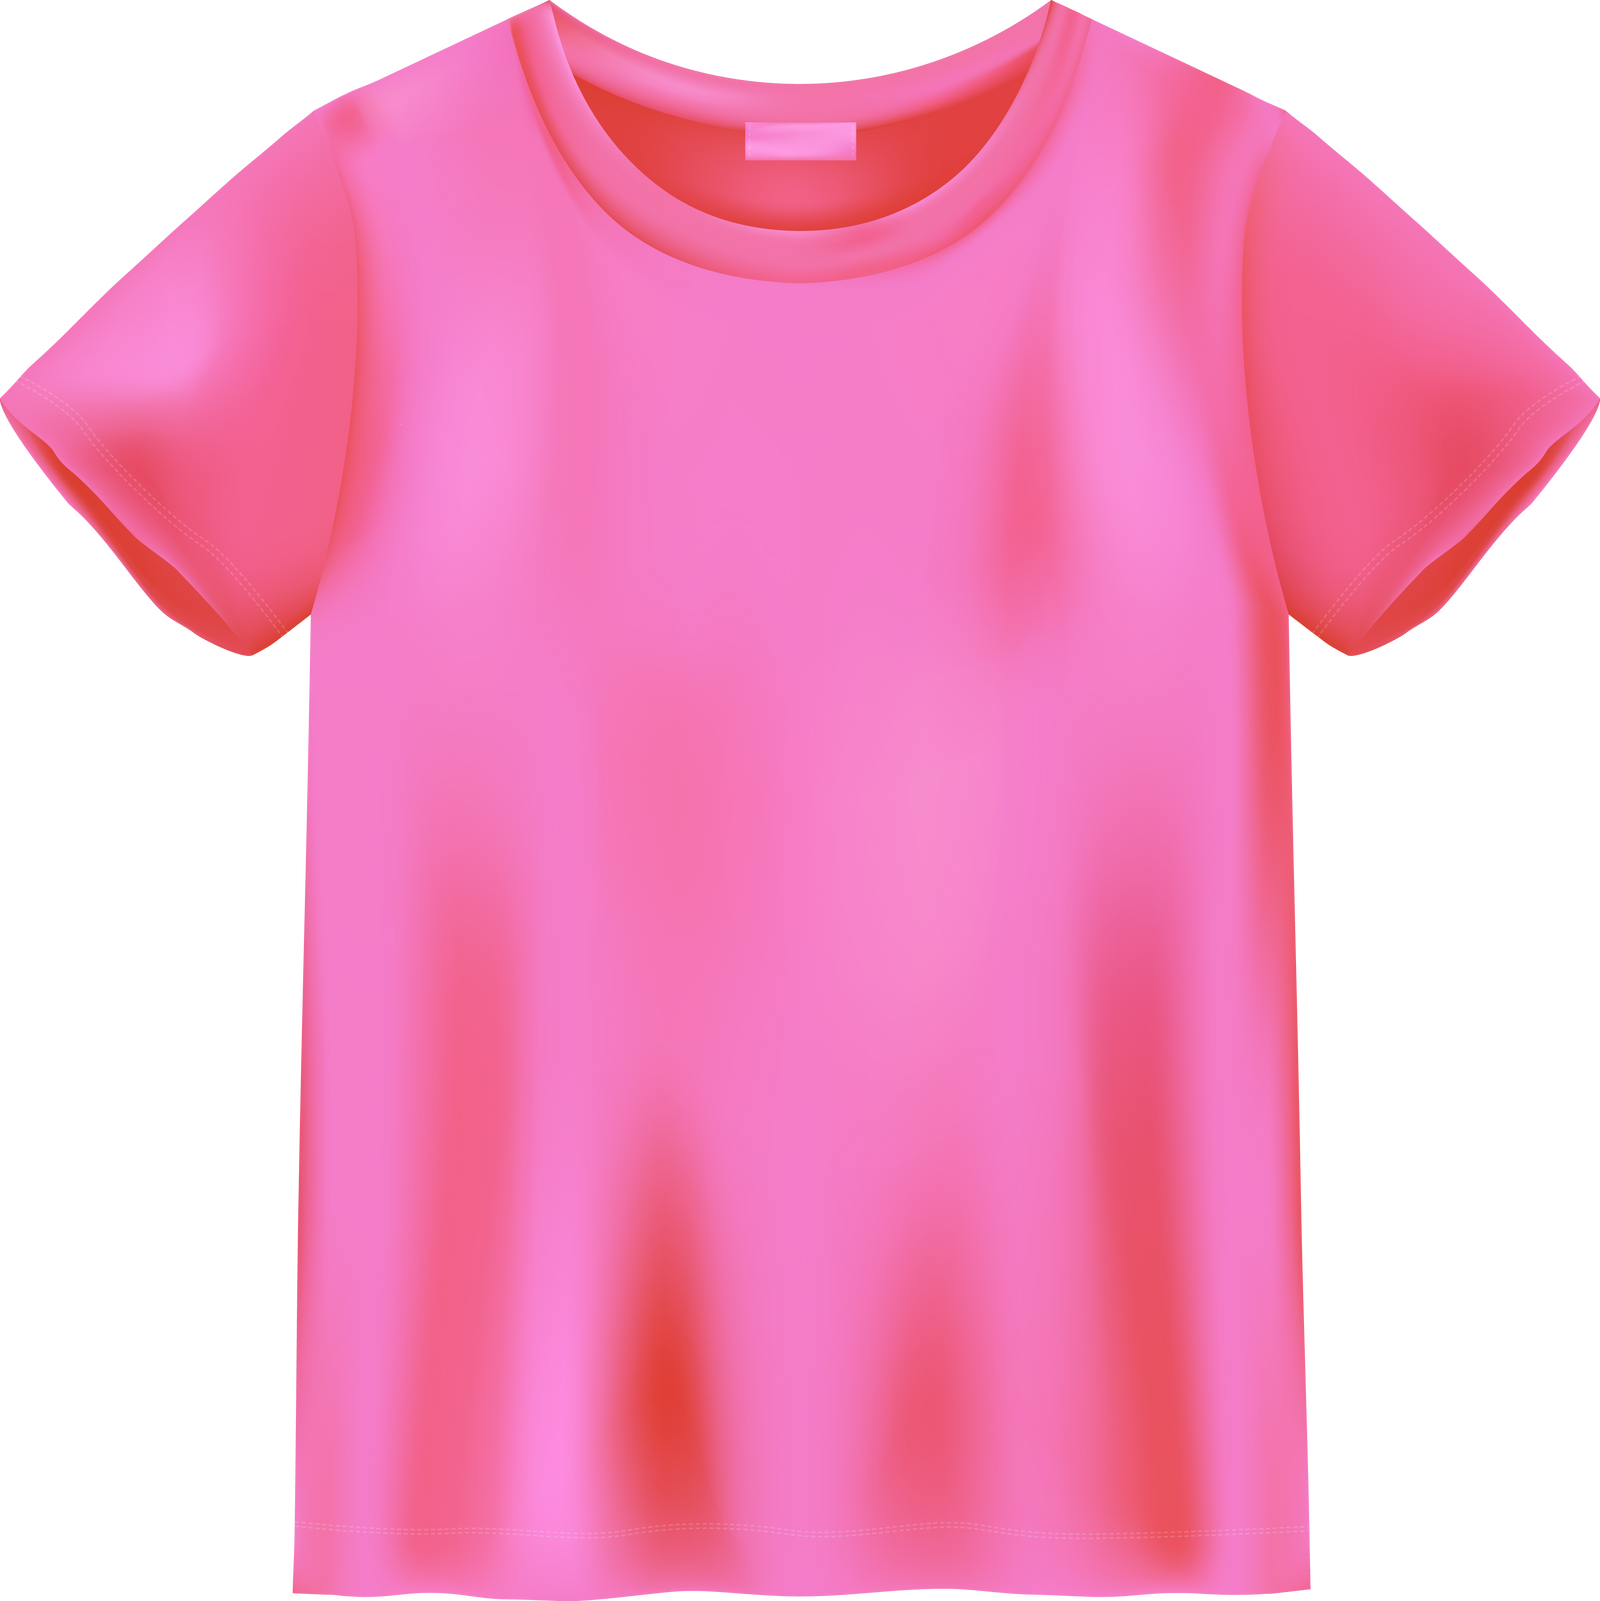 Unisex Pink T Shirt Mock up. T-Shirt Design Template.